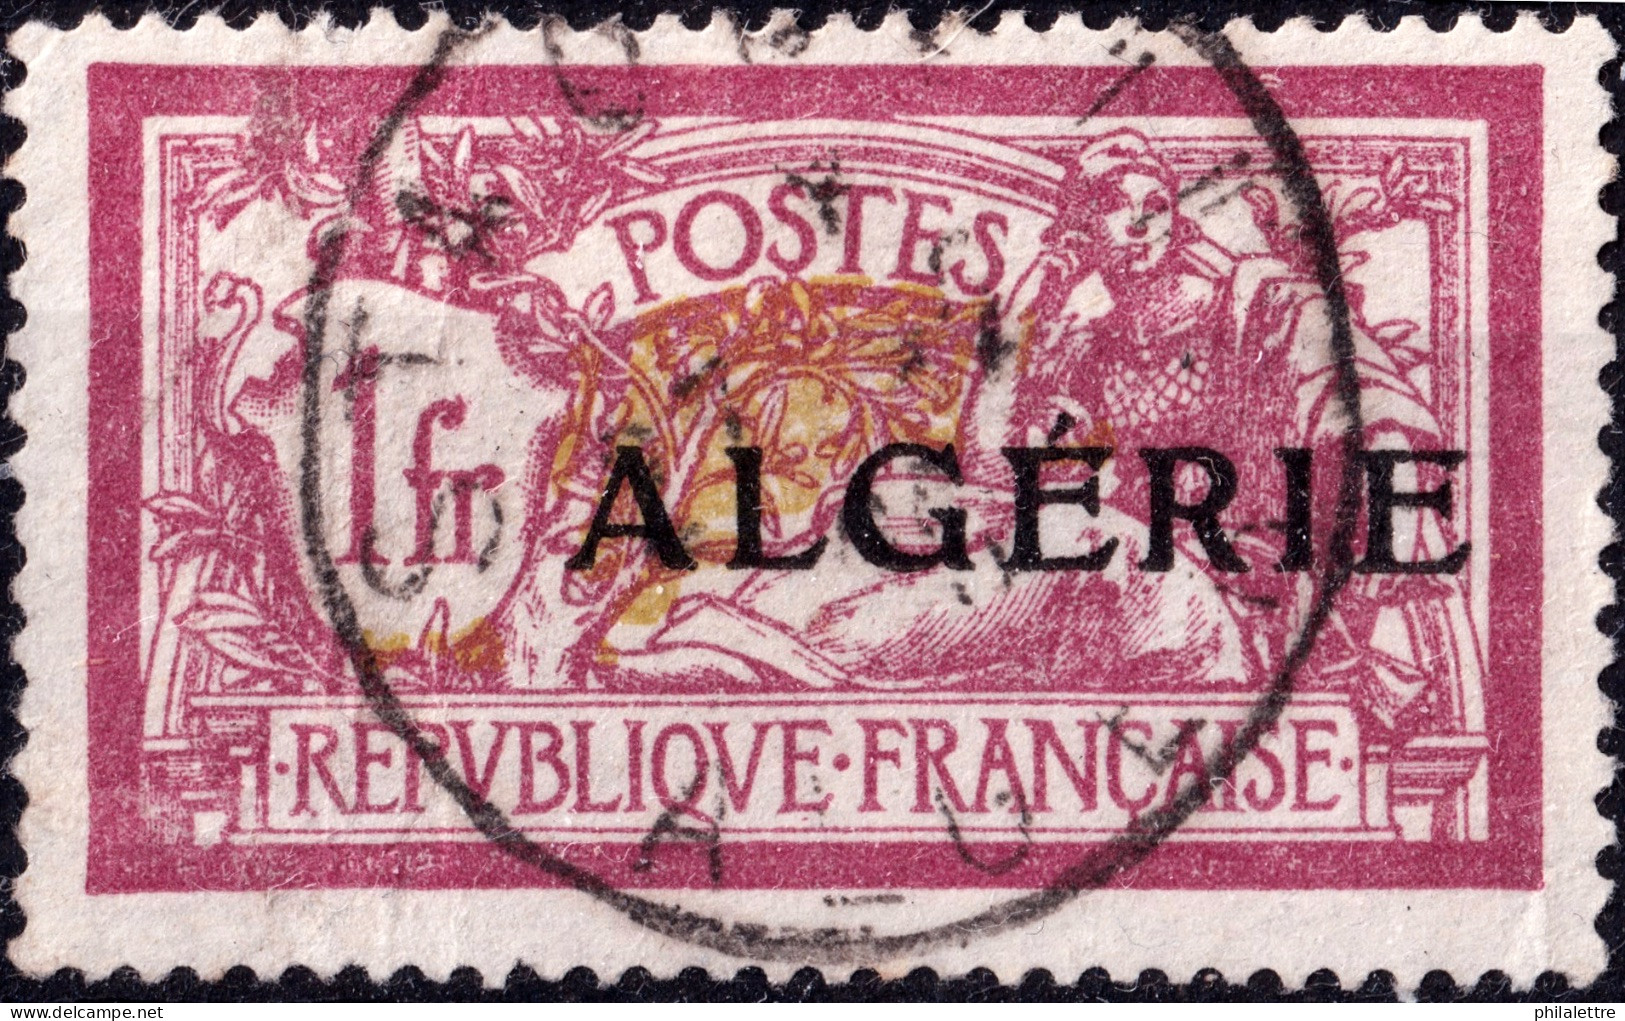 ALGÉRIE - Ca.1925 - TàD "STAOUELI / ALGER" Sur Yv.29 1fr Merson - TB - Usati